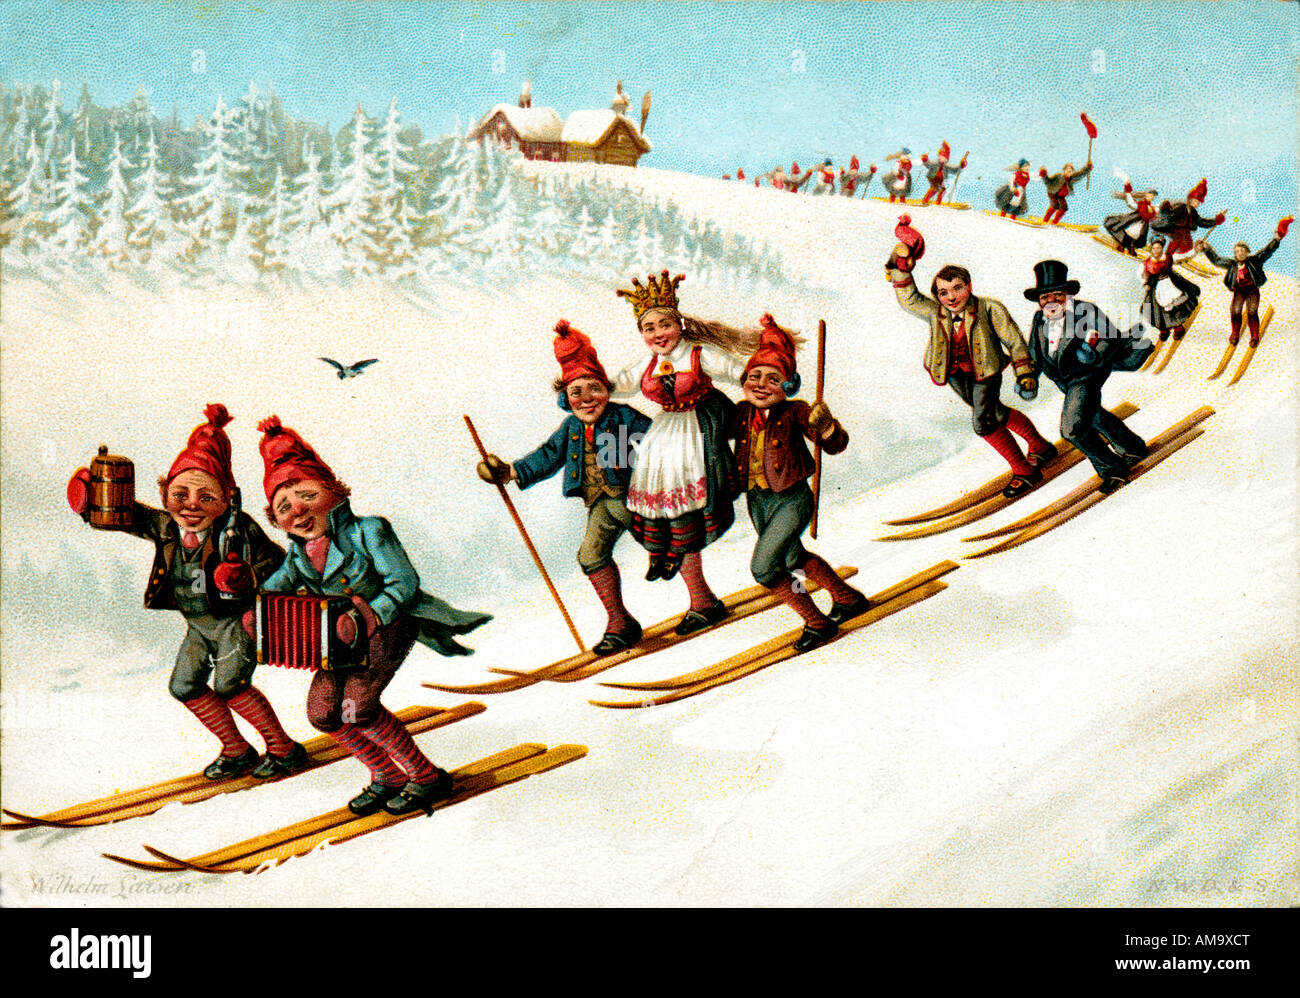 Carte postale suisse de ski 1893 illustration montrant les joies de la vie dans les Alpes et de plaisir avec les sports d'hiver Banque D'Images